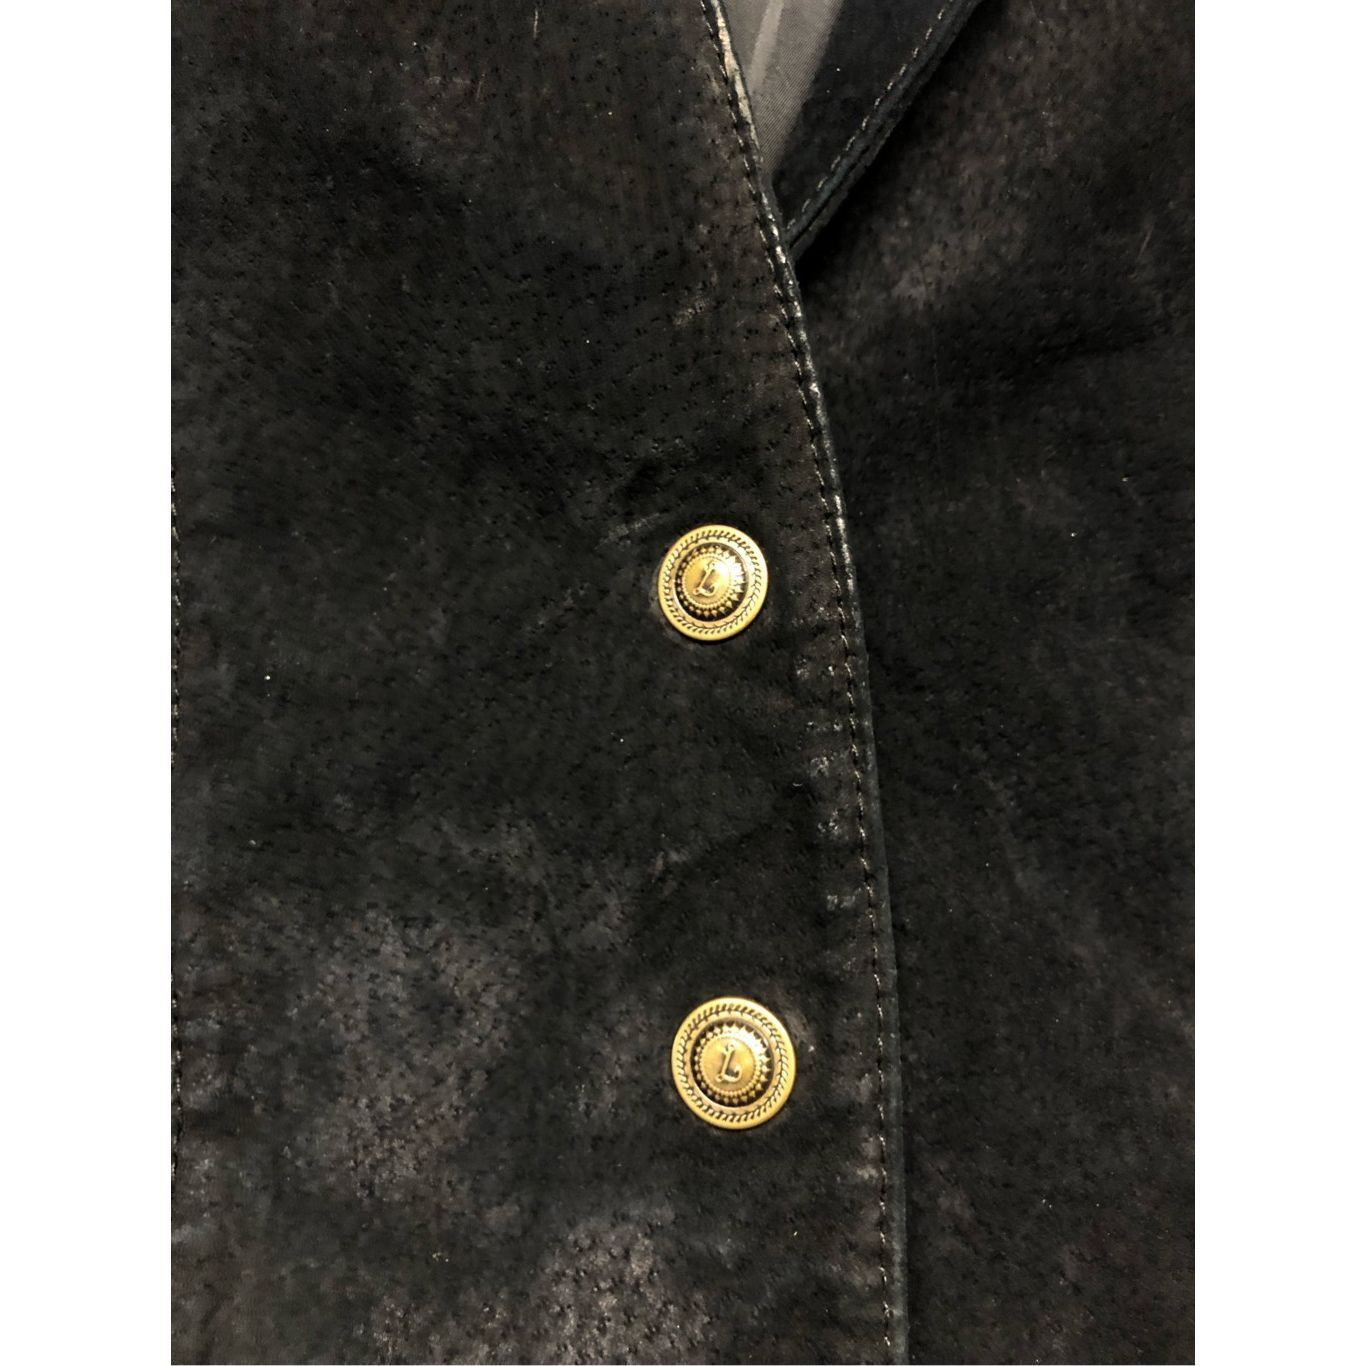 A-Line Live a Little Black 100% Leather Button Jacket Women's Size Size S / US 4 / IT 40 - 5 Thumbnail